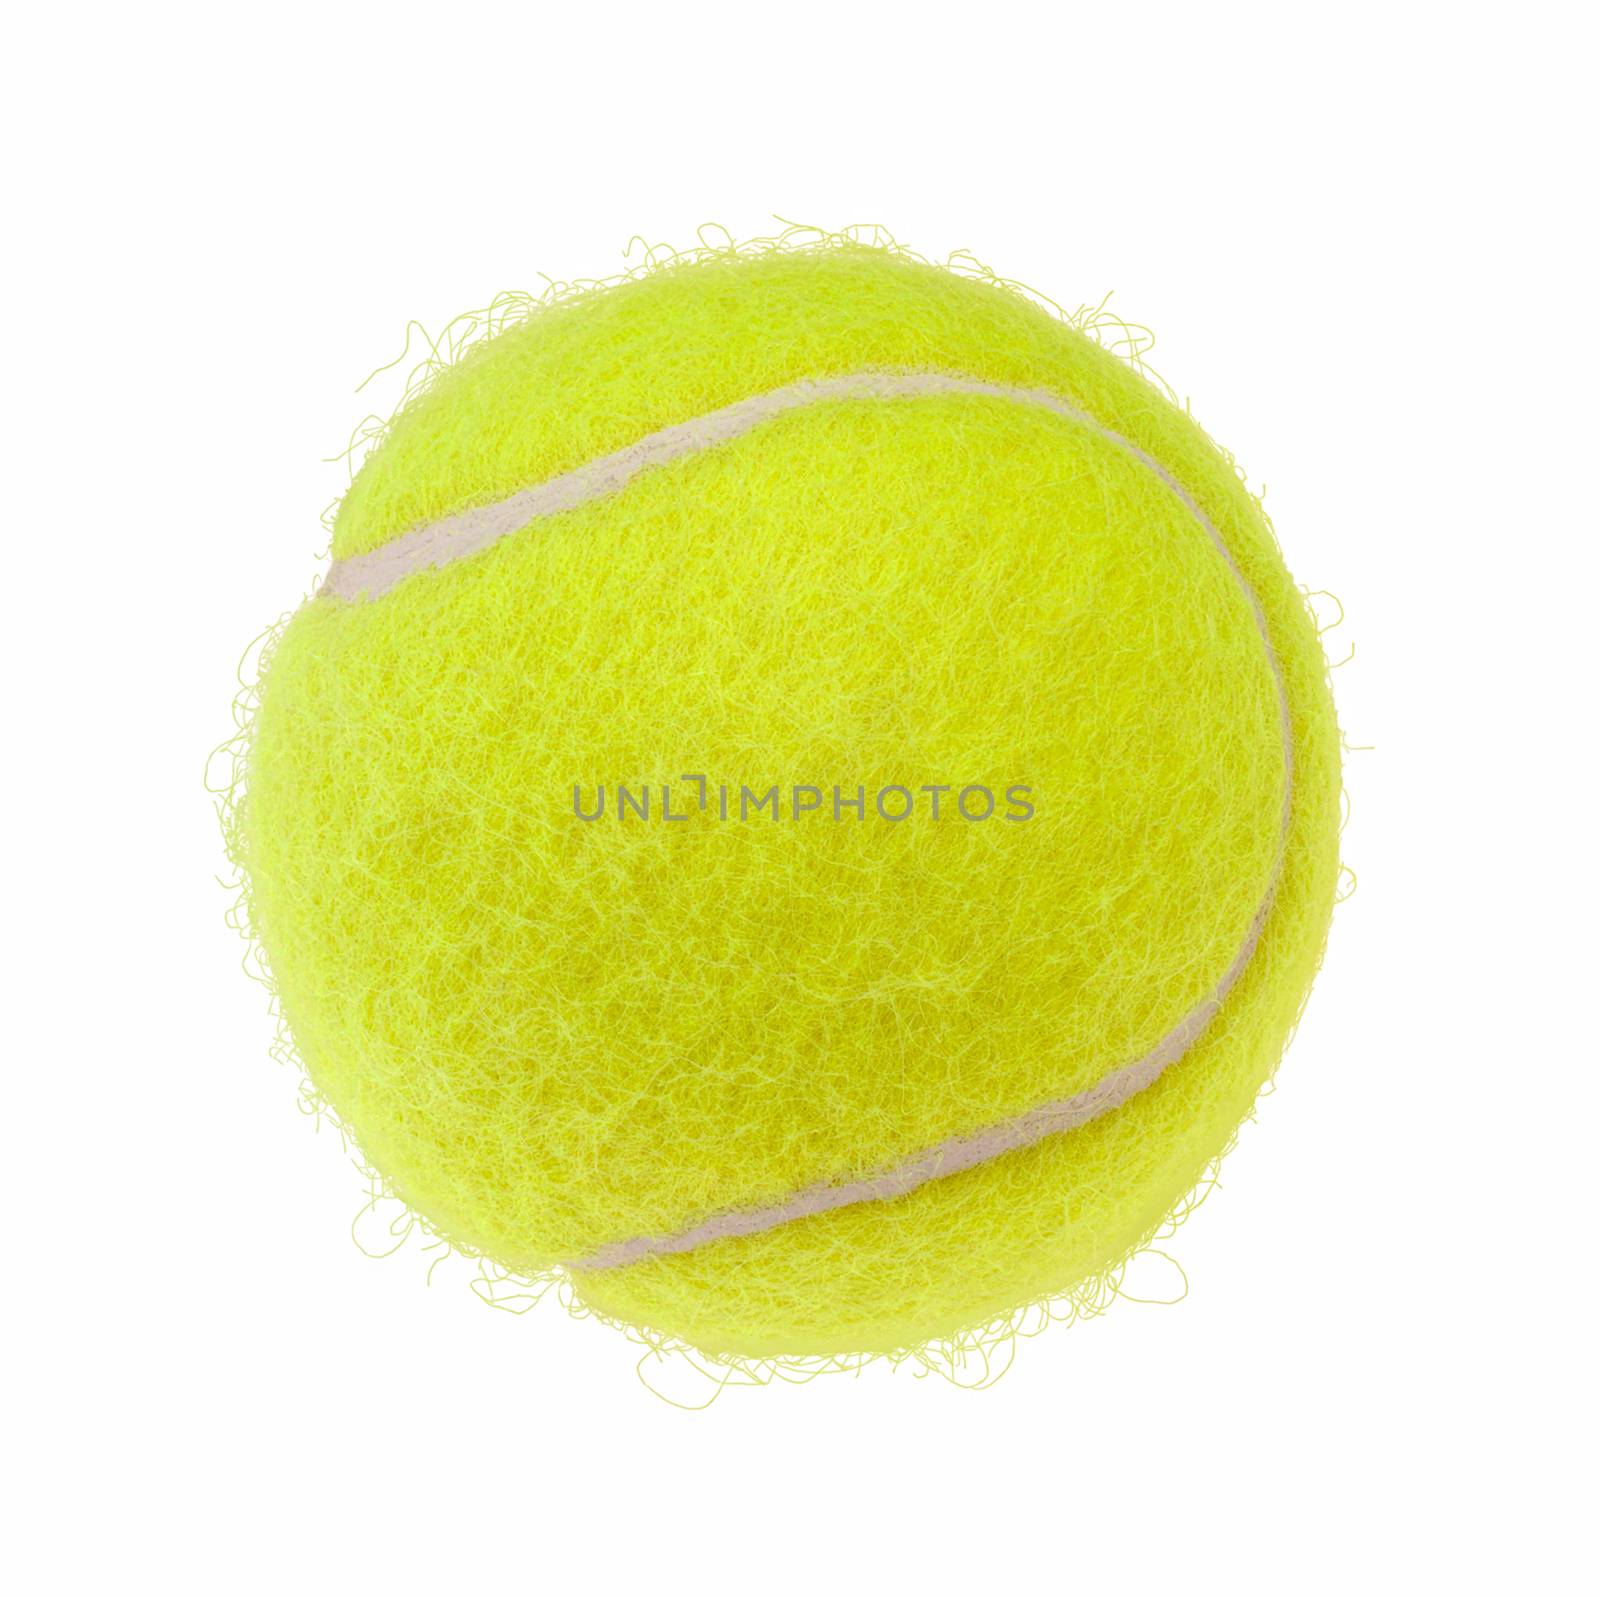 Tennis ball cutout by vkstudio